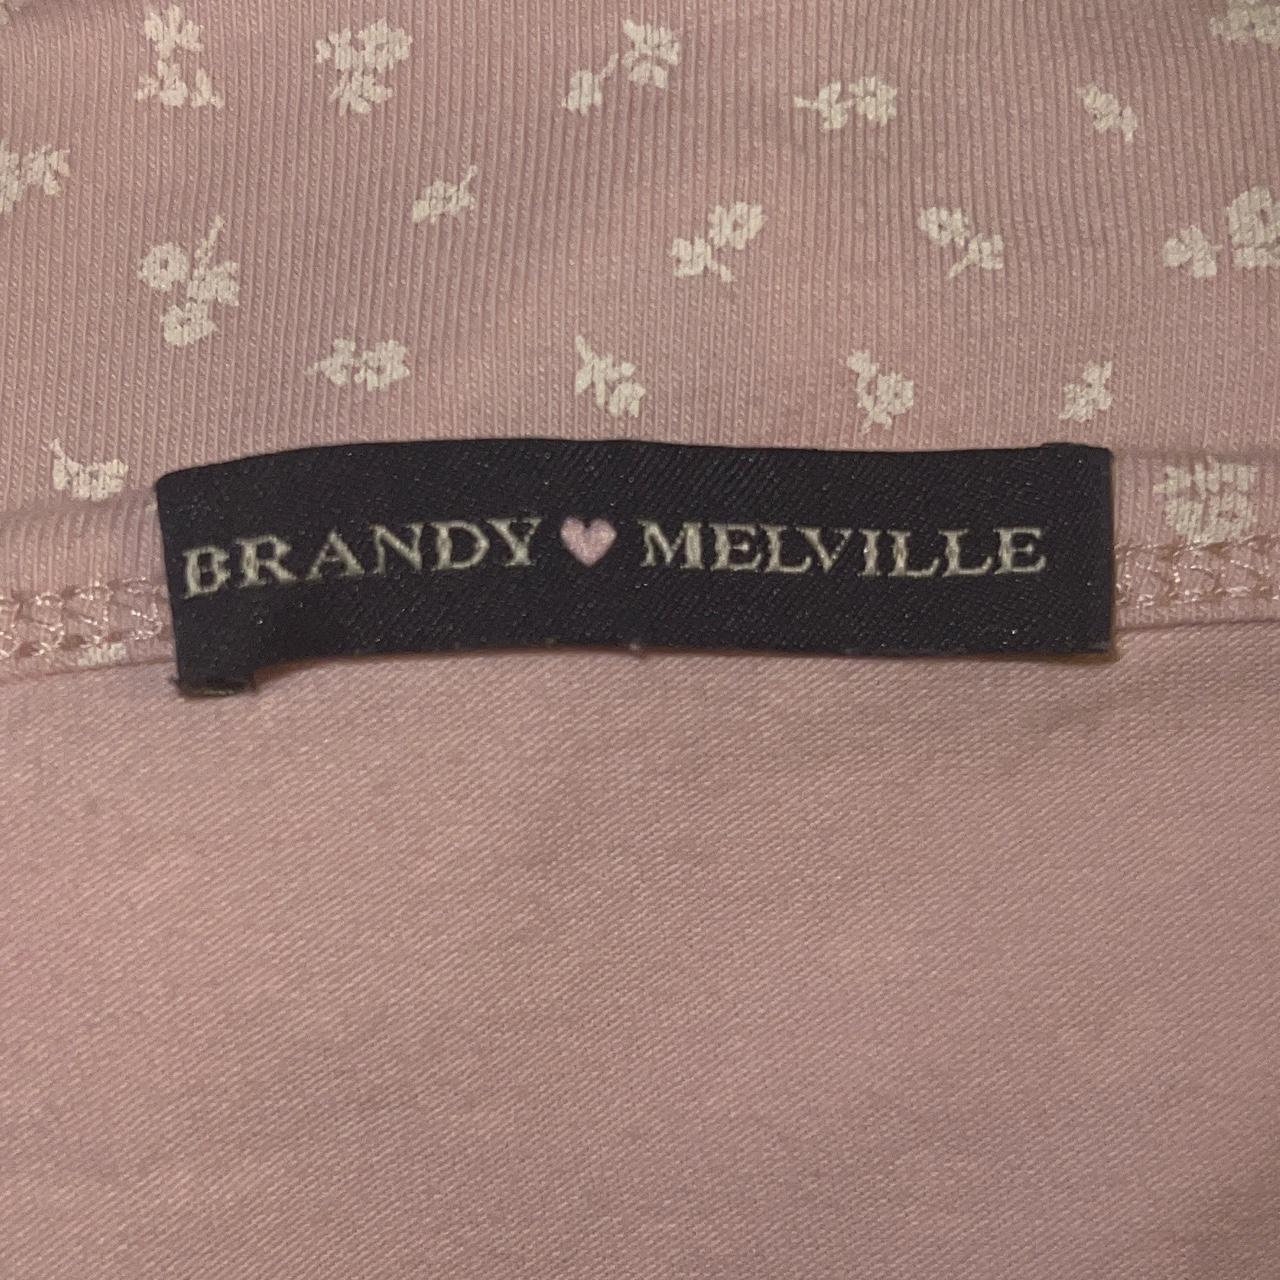 𝐡𝐚𝐯𝐞.𝐚.𝐛𝐫𝐚𝐧𝐝𝐲.𝐝𝐚𝐲 ☻ พรีแบรนดี้ on X: シPre-order Brandy  Melville✰⁣ Amara Dress Price : 920฿ ⁣ Lead time within 15-20 days.⁣  #brandymelville #haveabrandyday ⁣ #brandymelvillepreorder  #brandymelvillethailand  / X